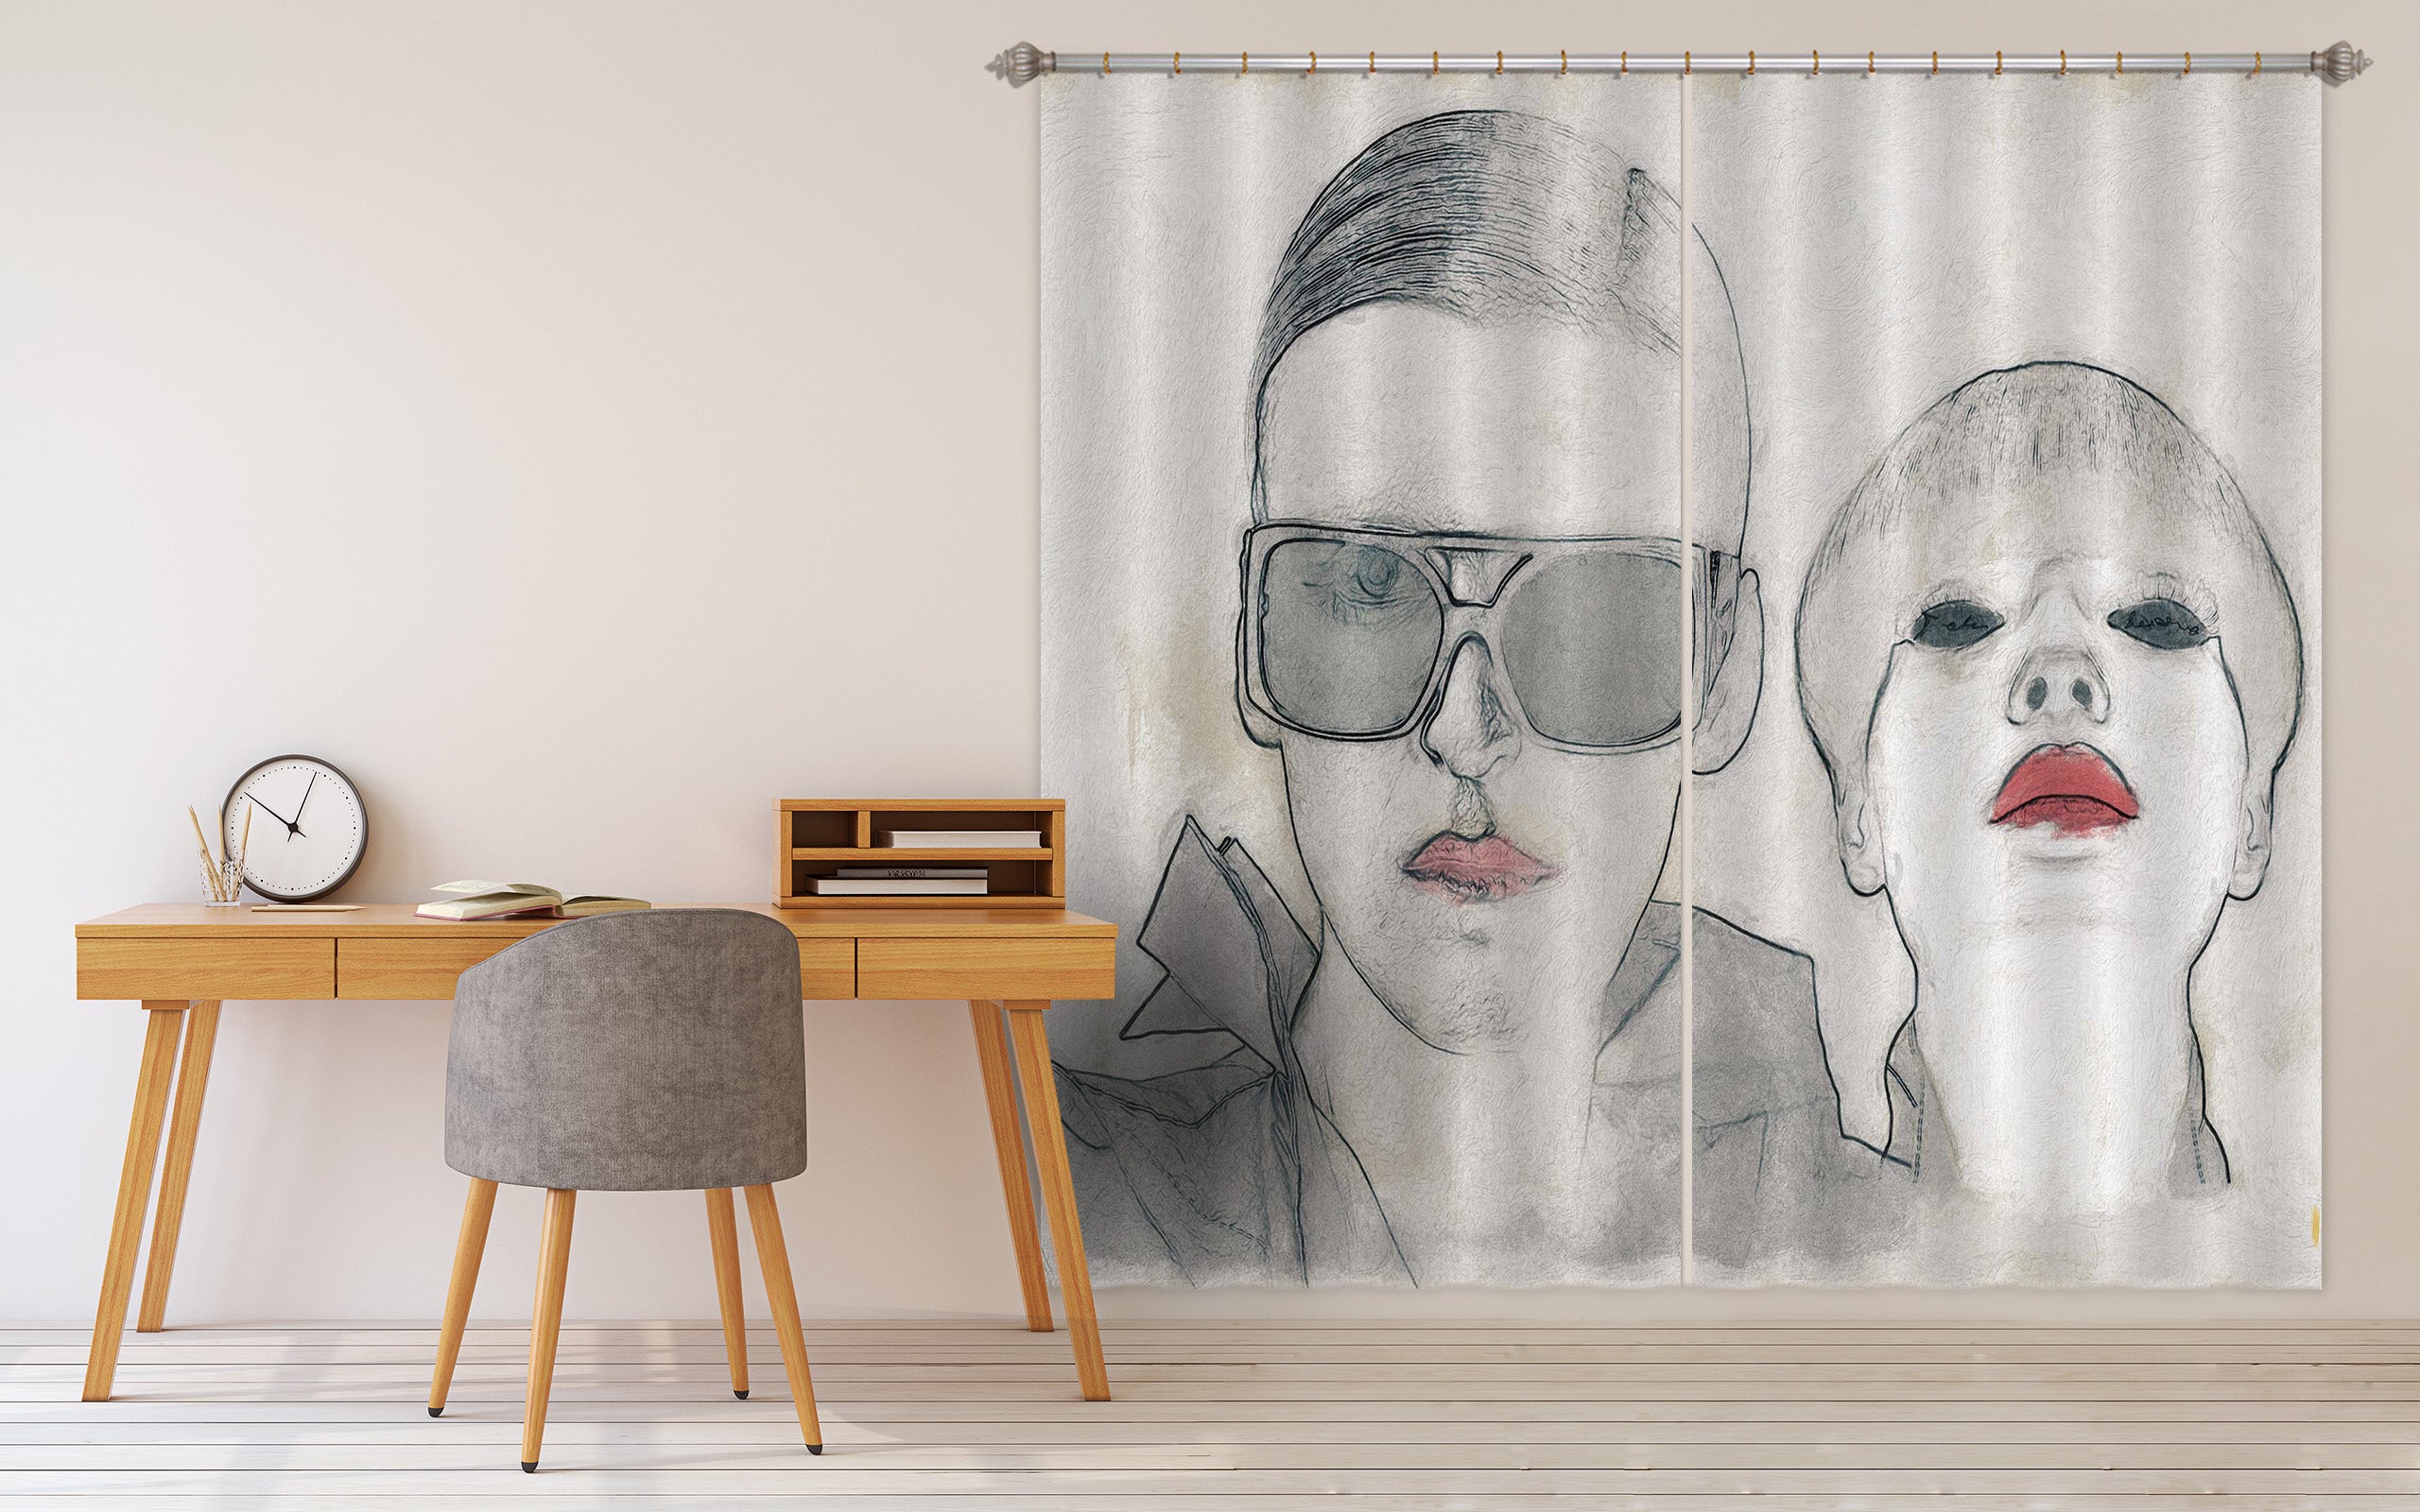 3D Fashion 048 Marco Cavazzana Curtain Curtains Drapes